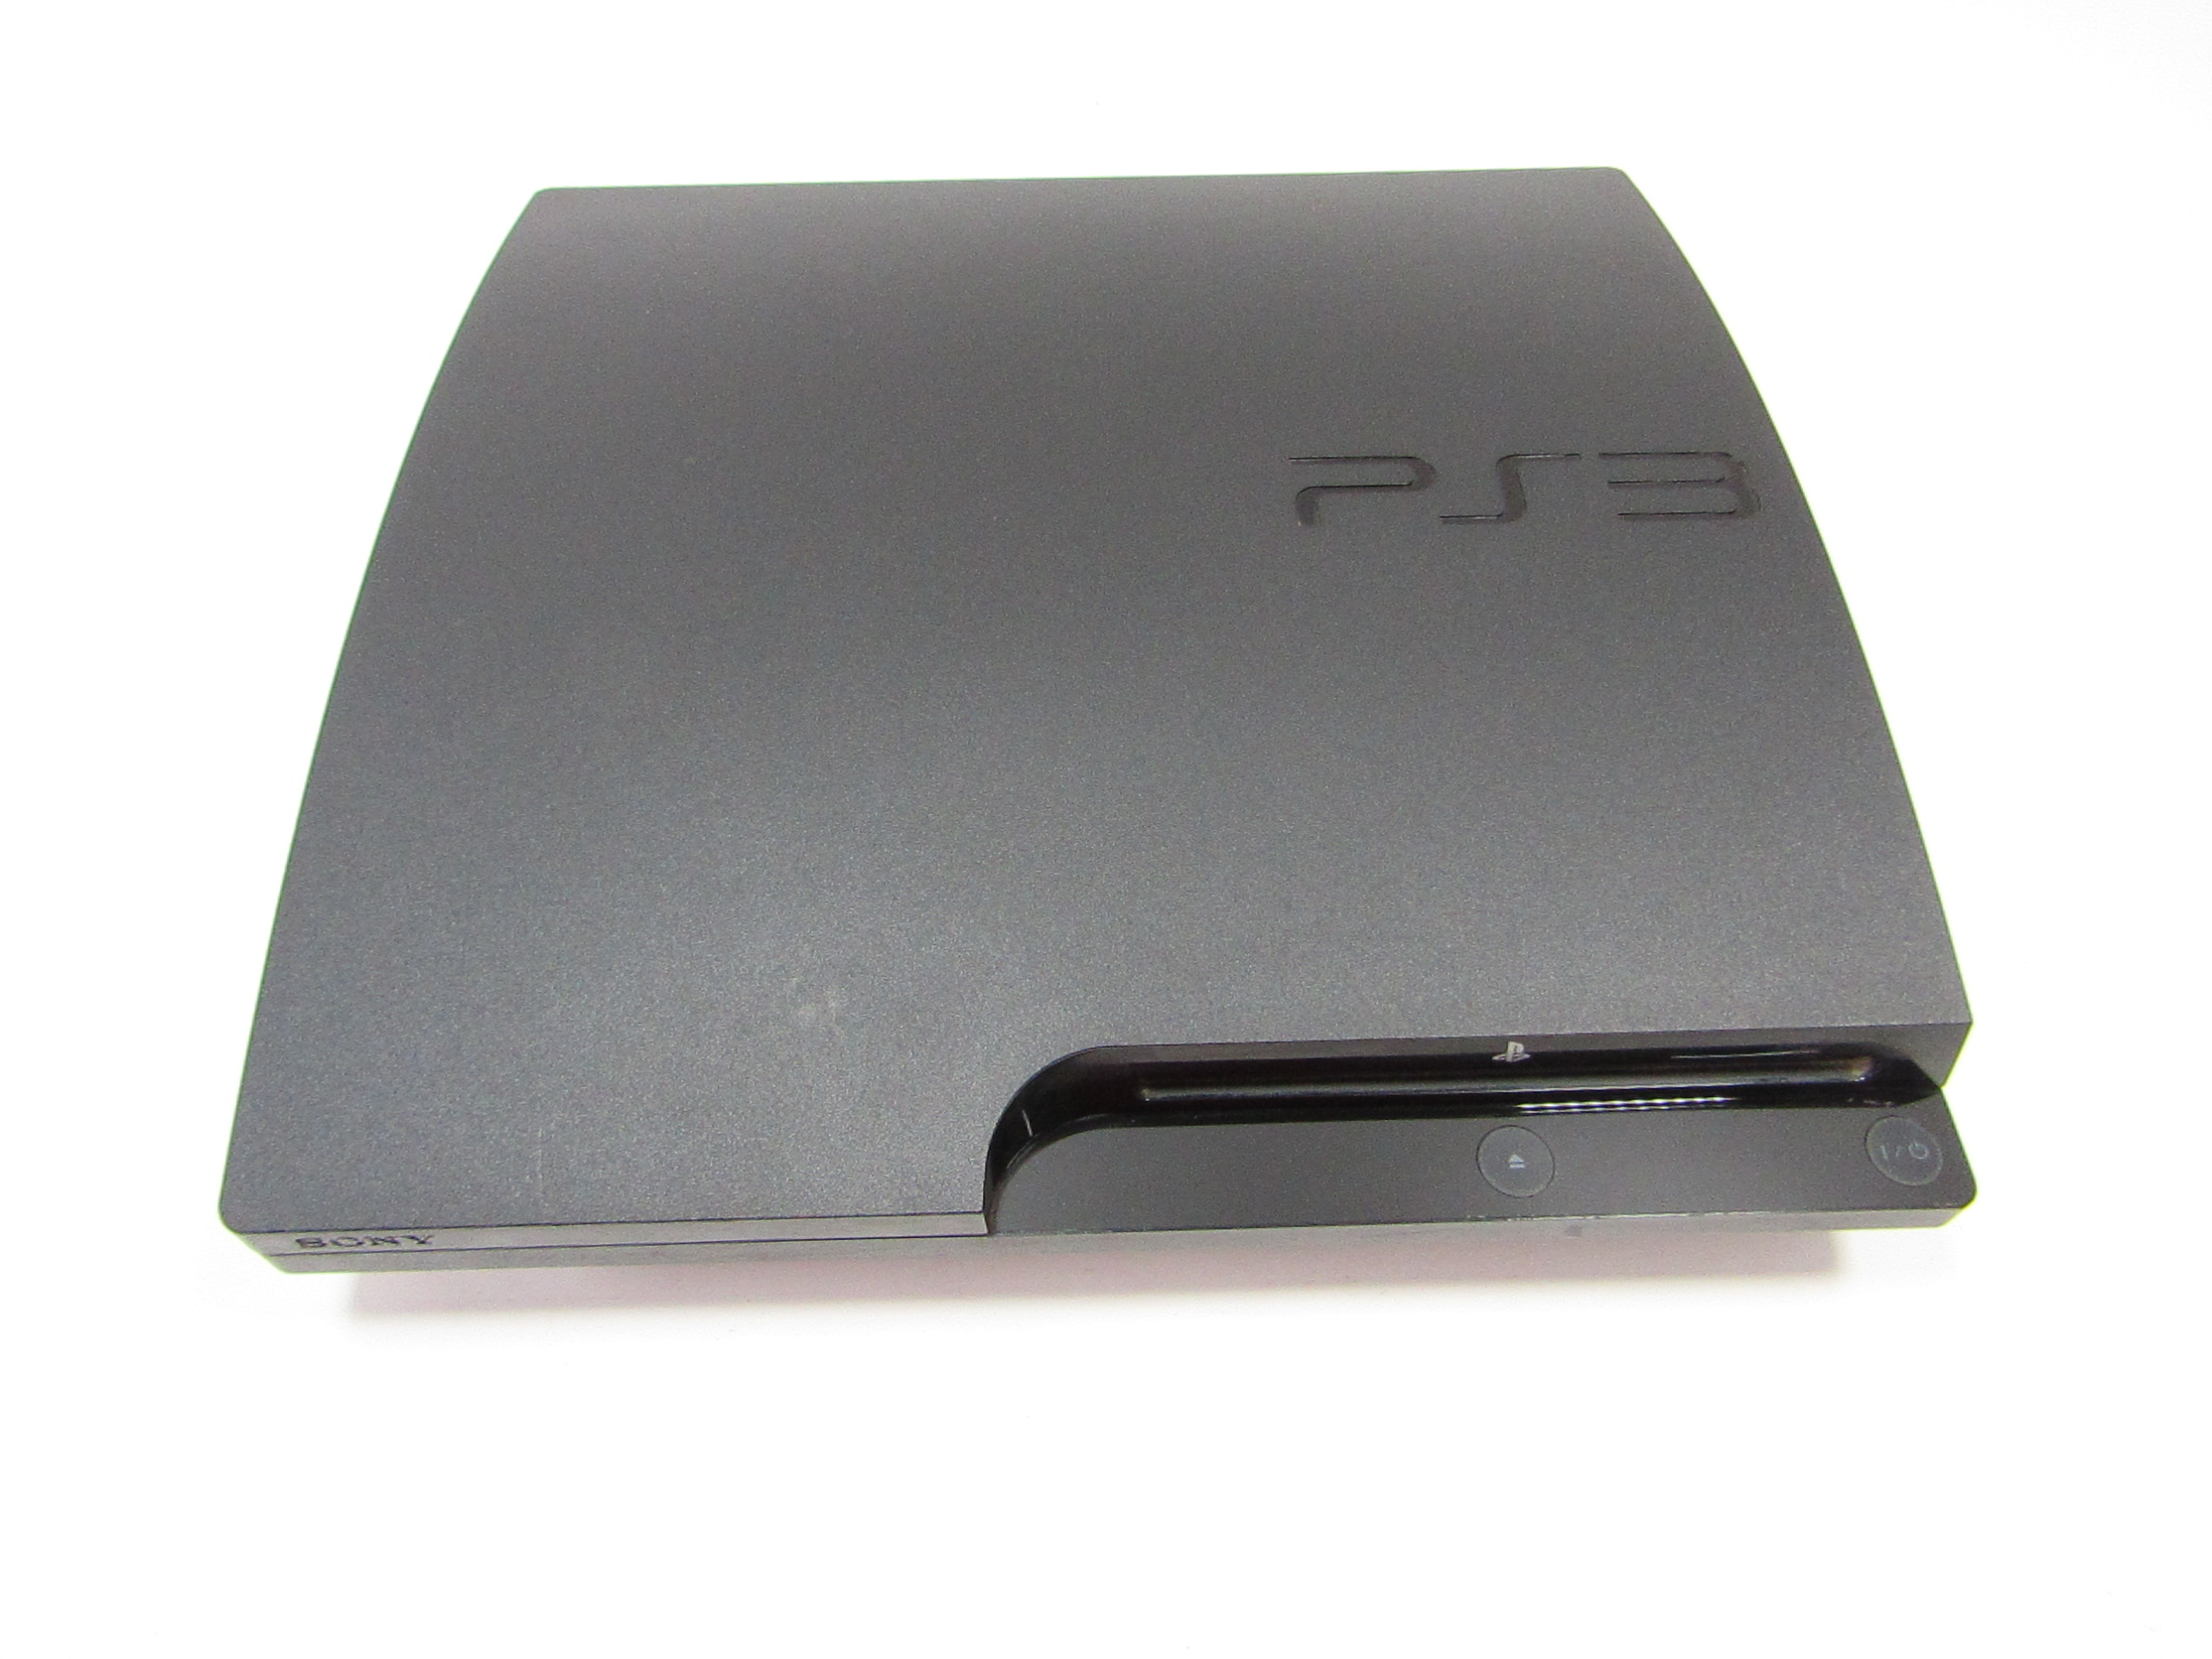 Sony Playstation 3 Console 320GB System Model CECH-3001B